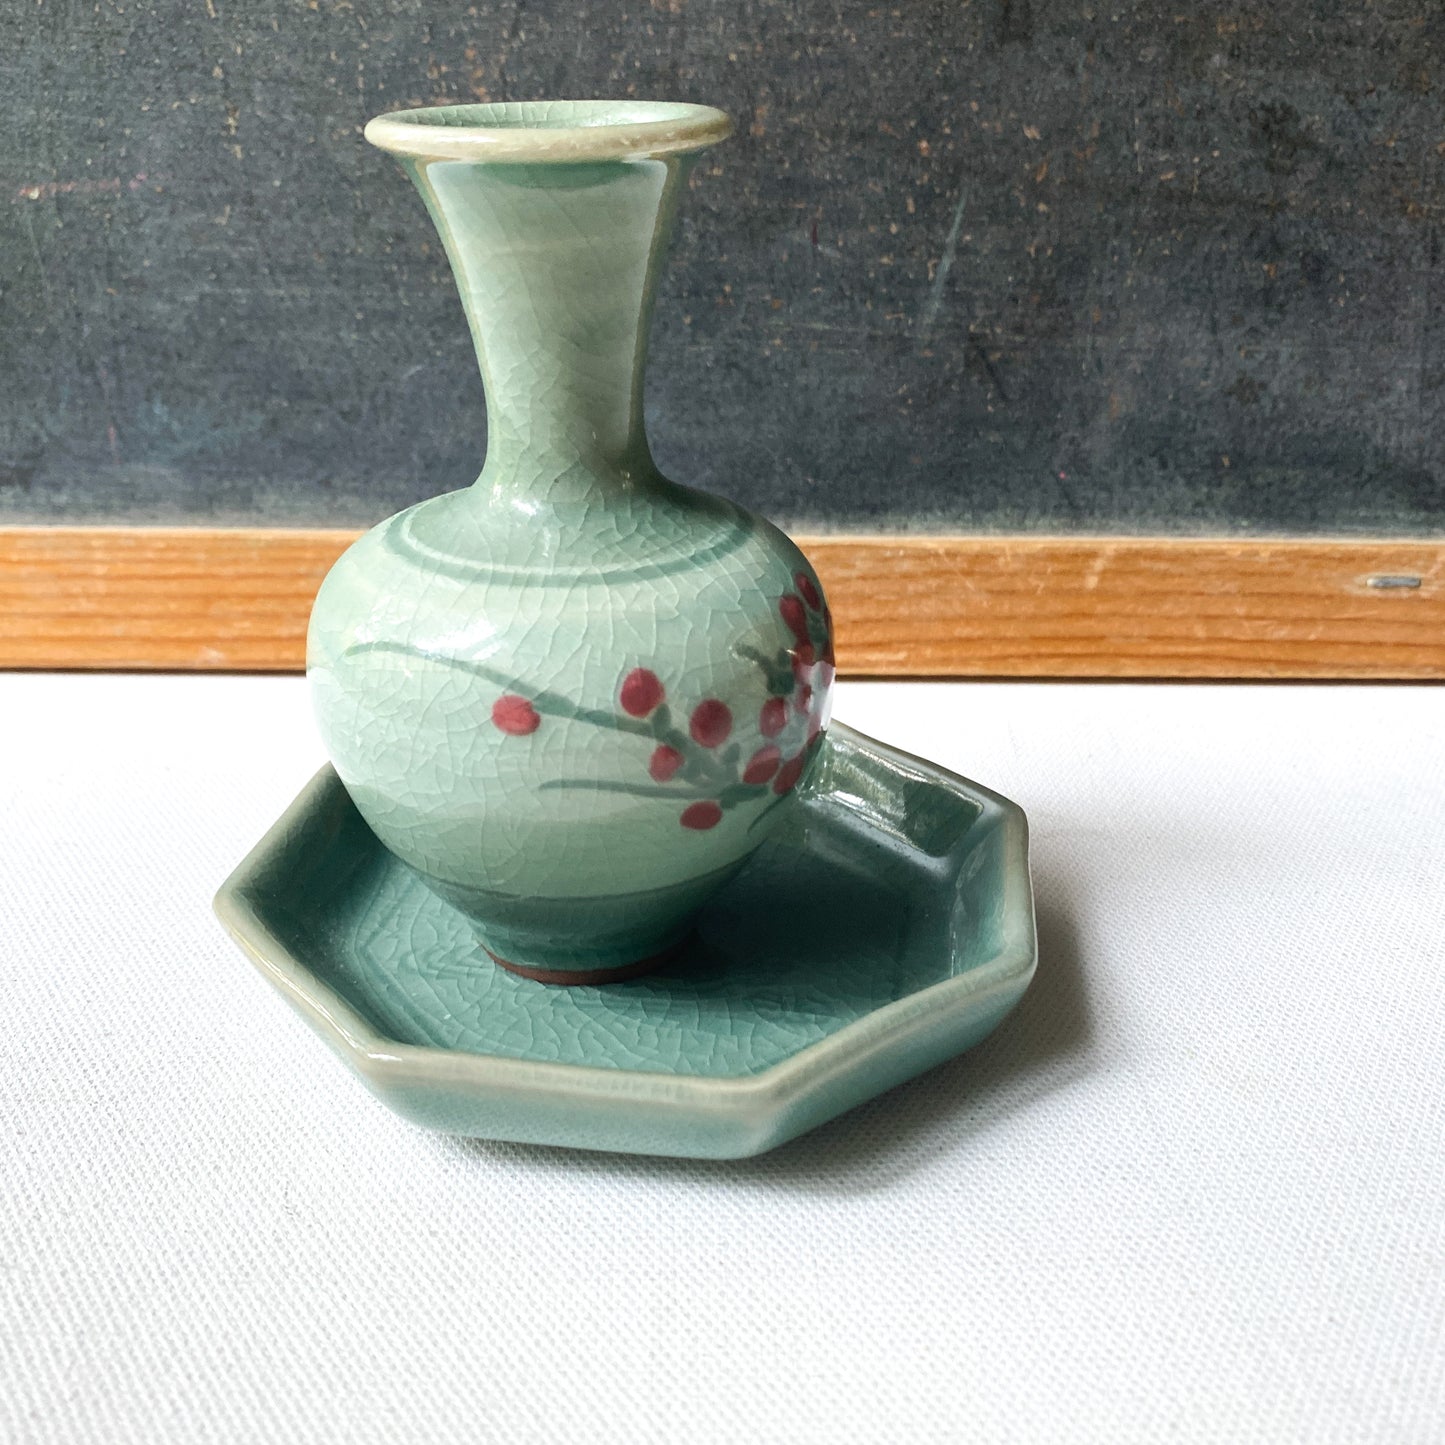 Vintage Asian Celadon Bud Vase and Trinket Dish